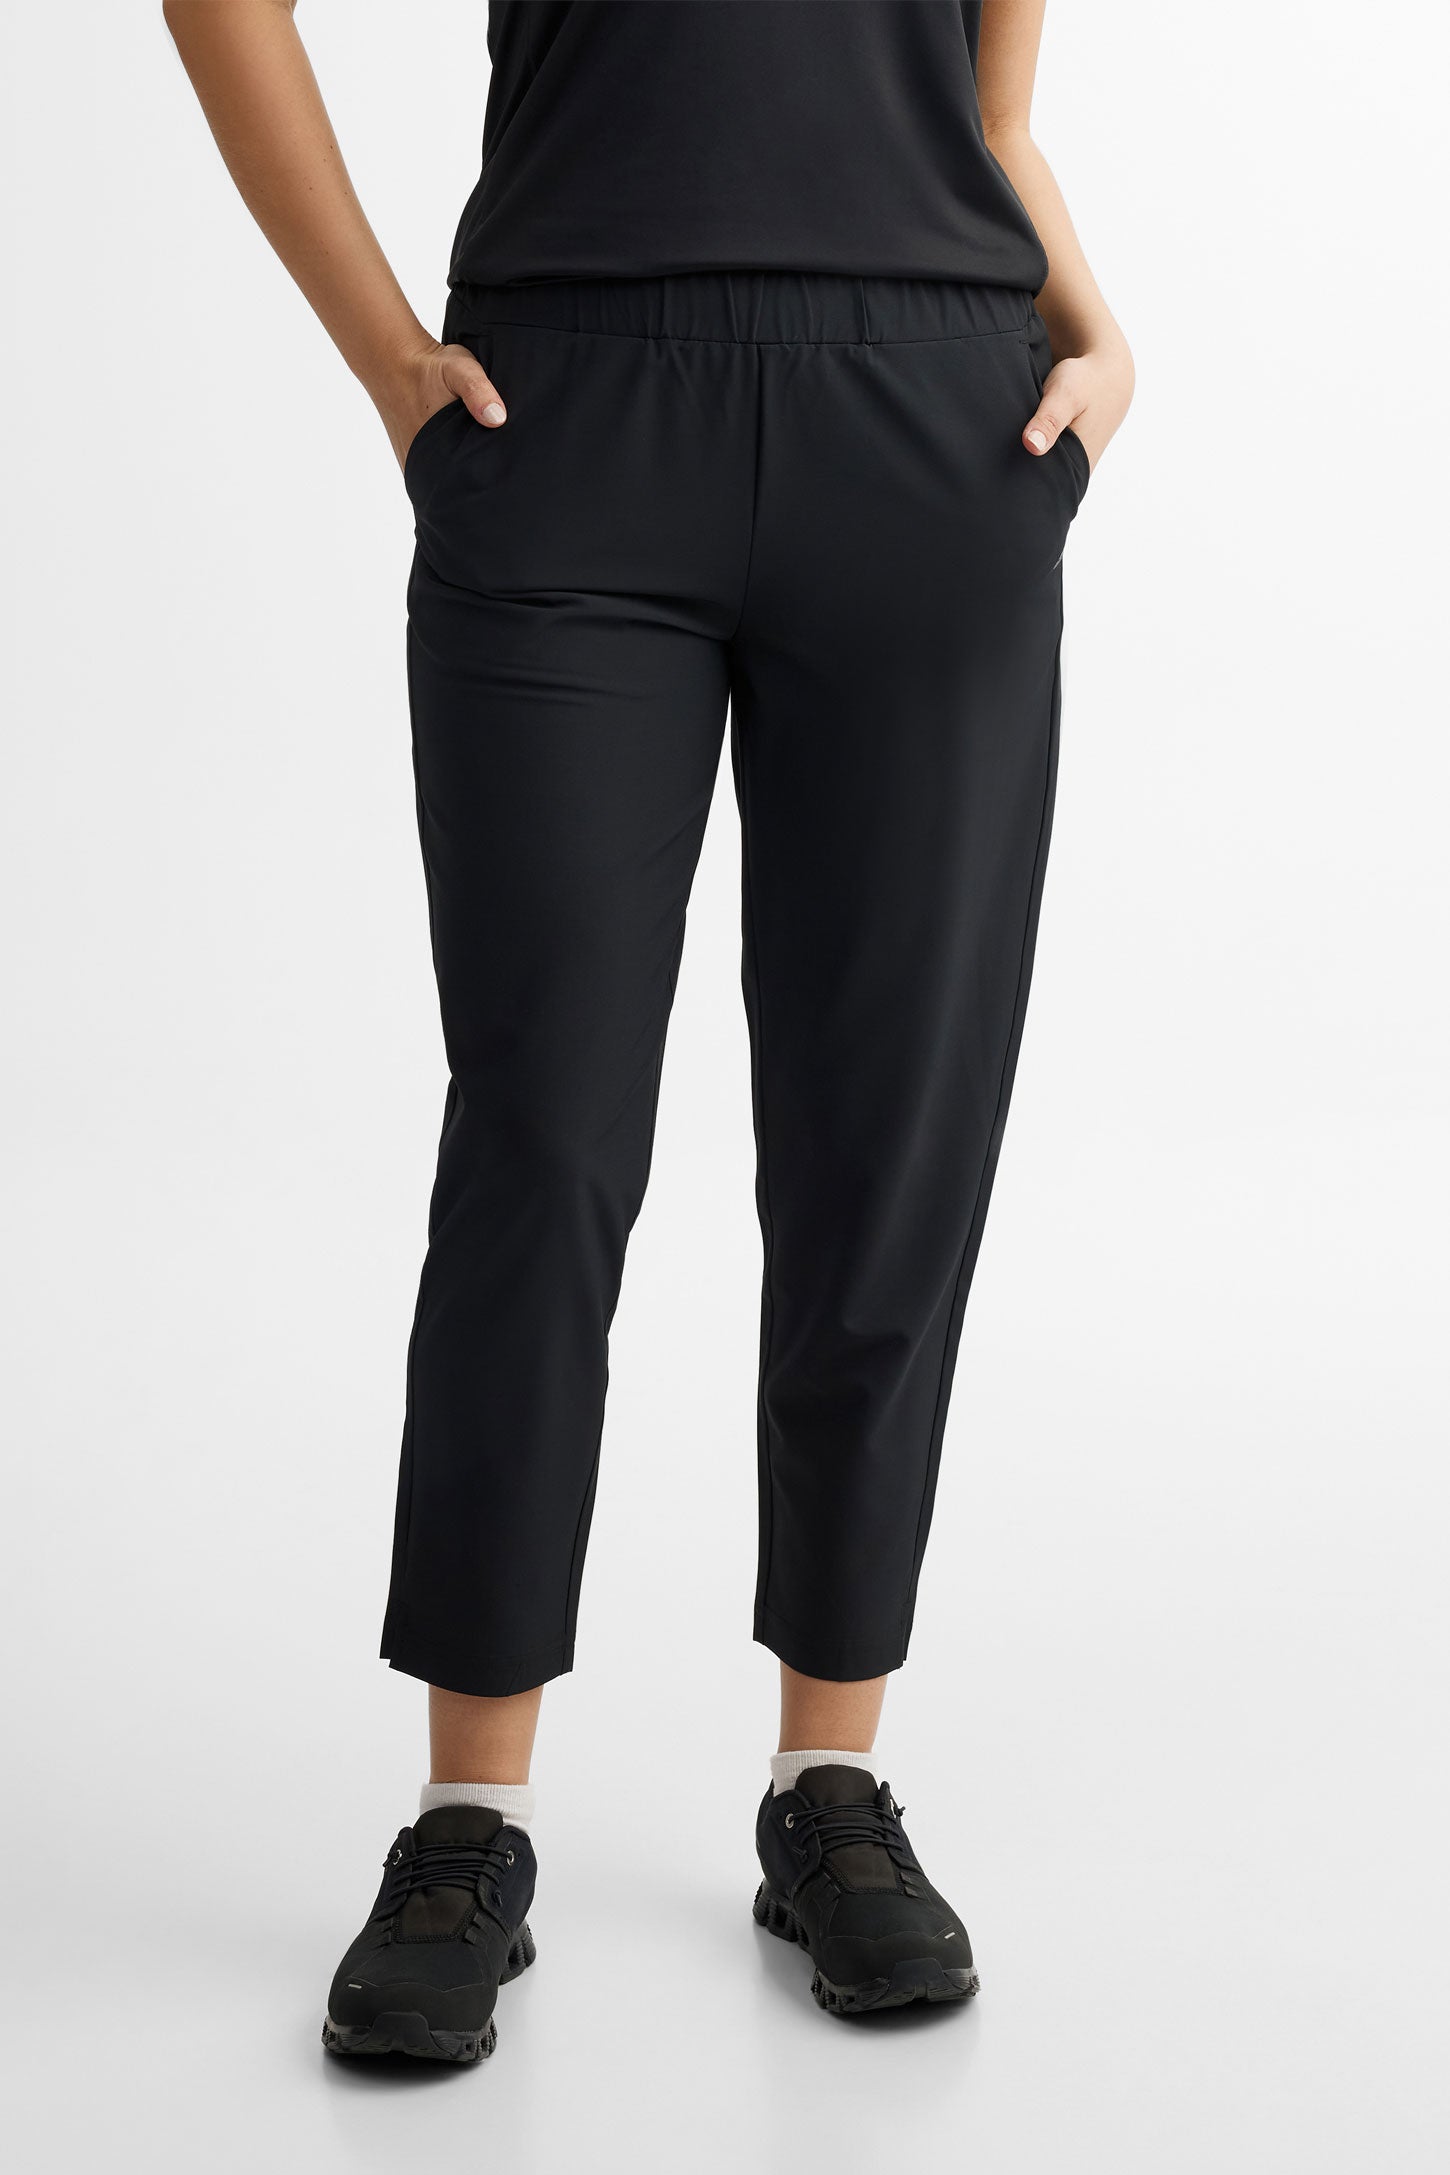 Pantalon athlétique taille élastique - Femme && NOIR